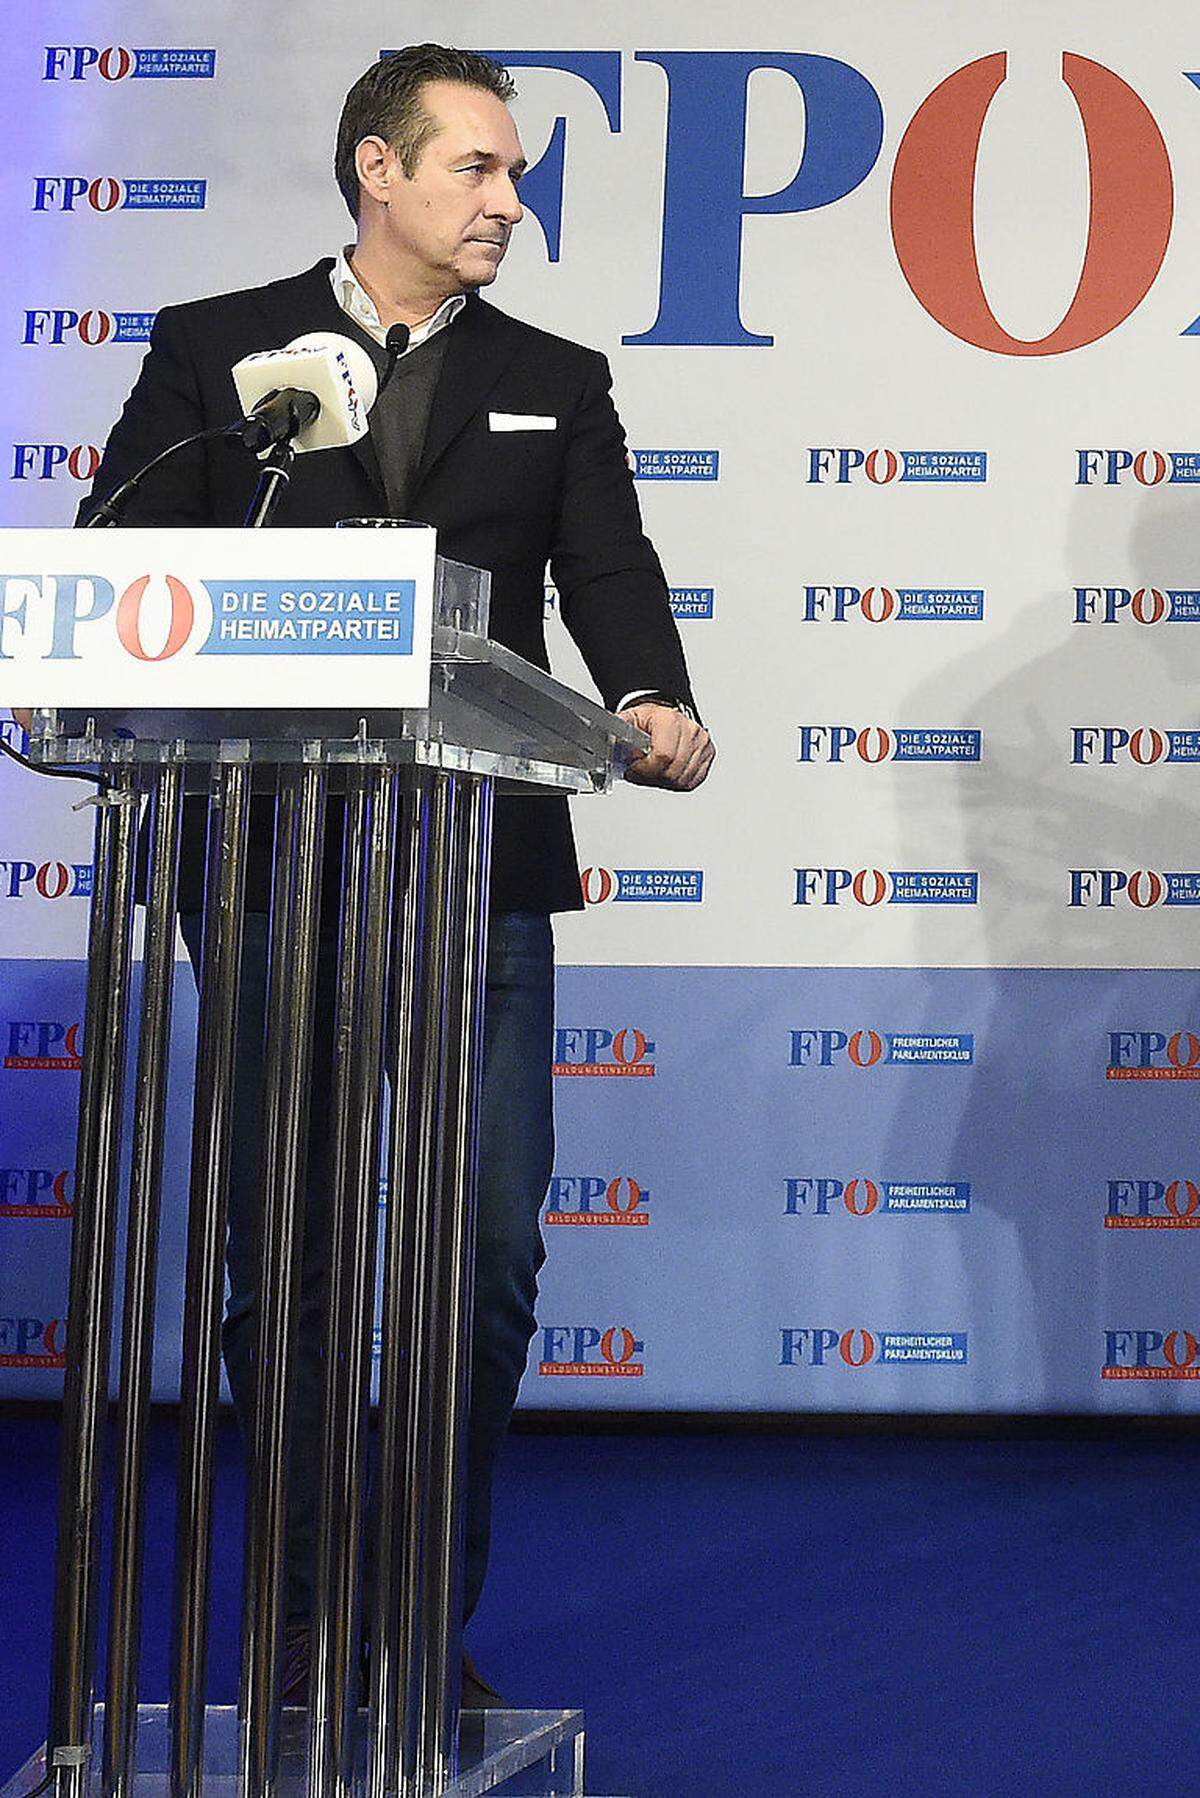 "Ich bin immer im Wahlkampfmodus." Allzeit bereit hingegen ist FPÖ-Chef Heinz-Christian Strache.